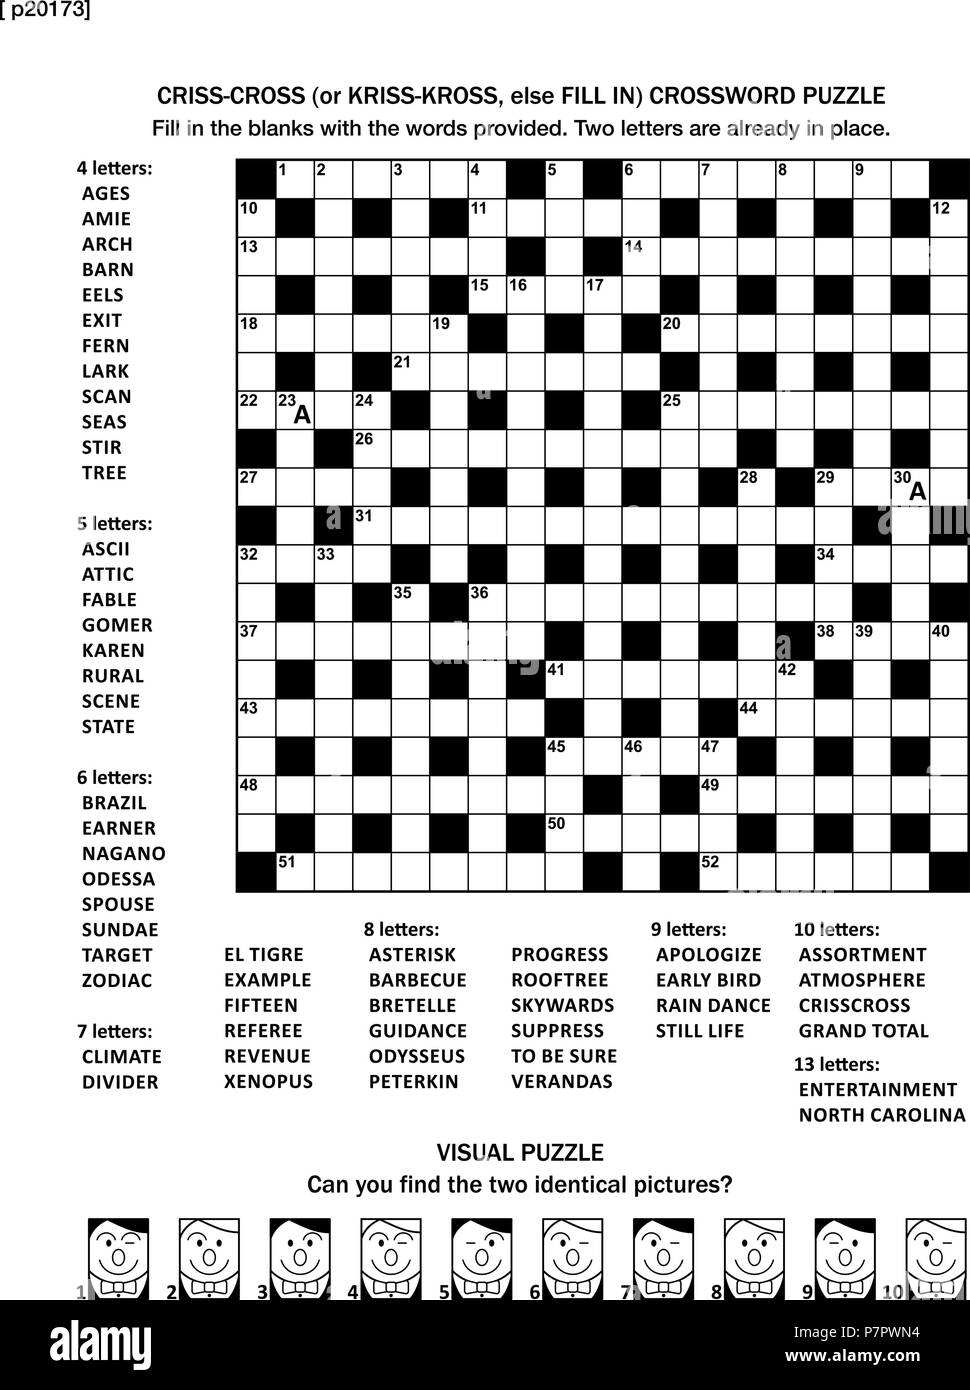 Puzzle Seite mit zwei Spiele: 19 x 19 Fill-in (oder Criss-cross, sonst Kriss  - kross) Kreuzworträtsel und visuelle Puzzle. Schwarz und Weiß, im A4 oder  Letter-Format. Antworten sind auf separate Datei Stock-Vektorgrafik -